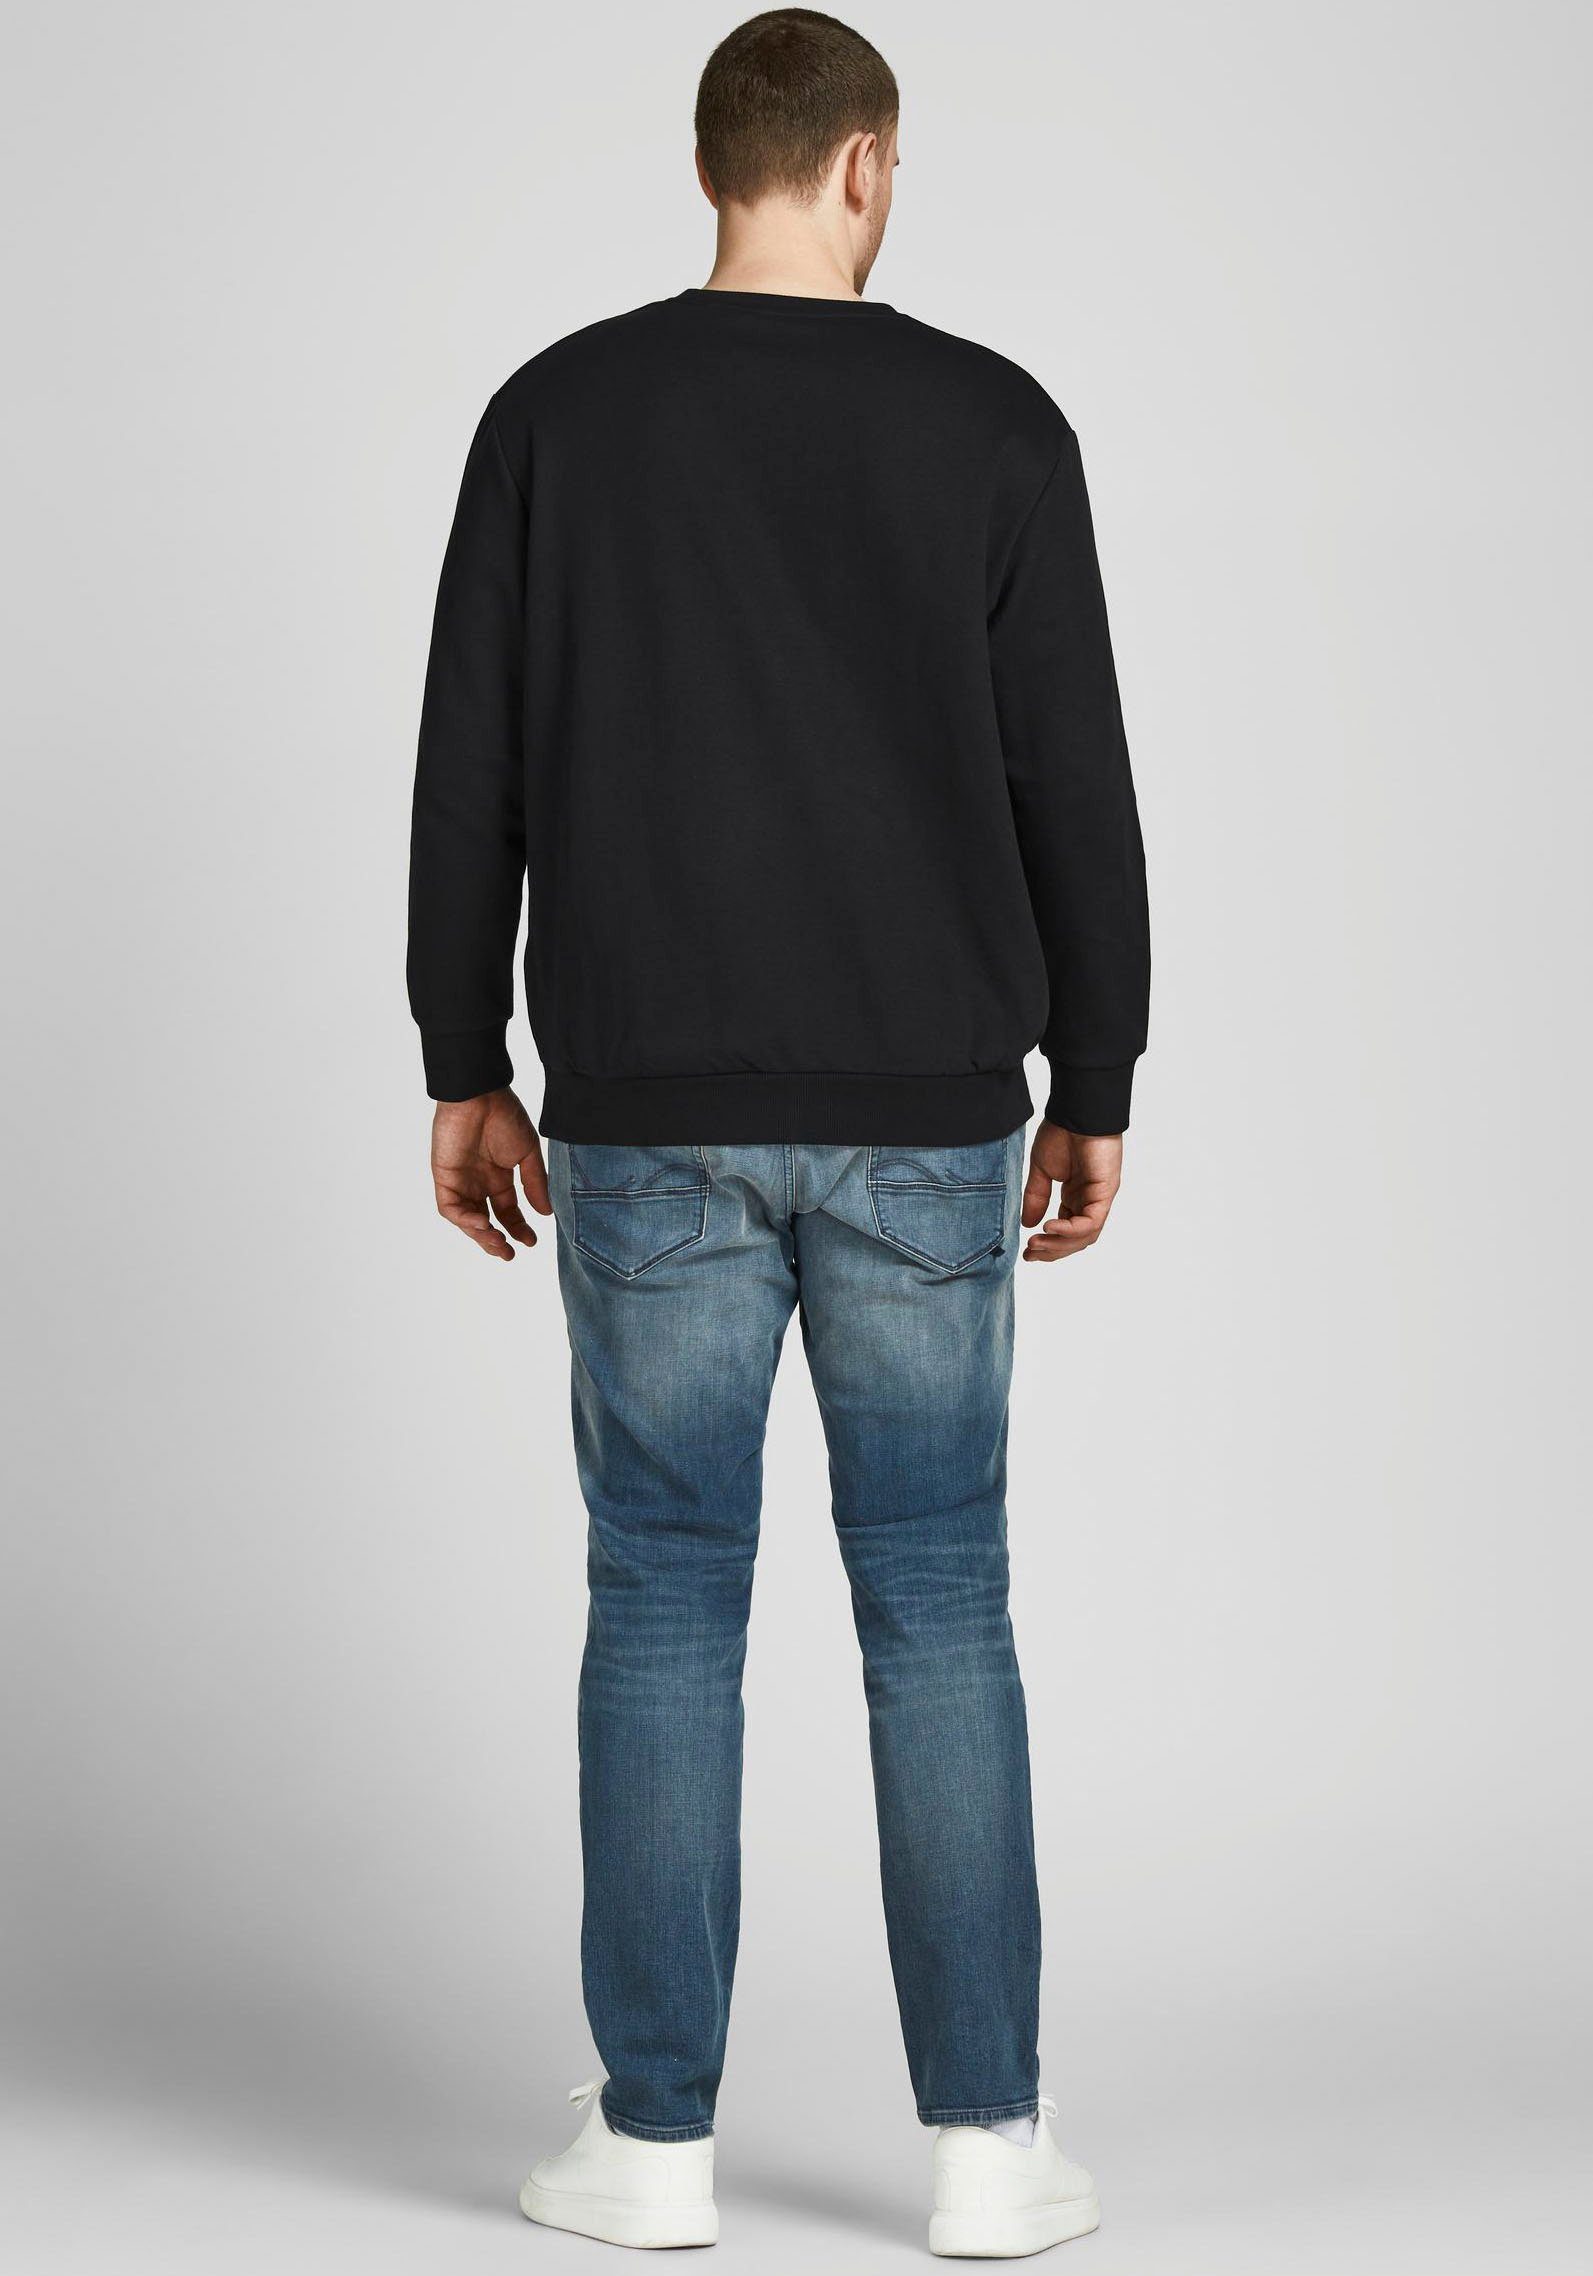 BASIC Jack NECK & Jones schwarz Sweatshirt SWEAT PlusSize (Packung) CREW